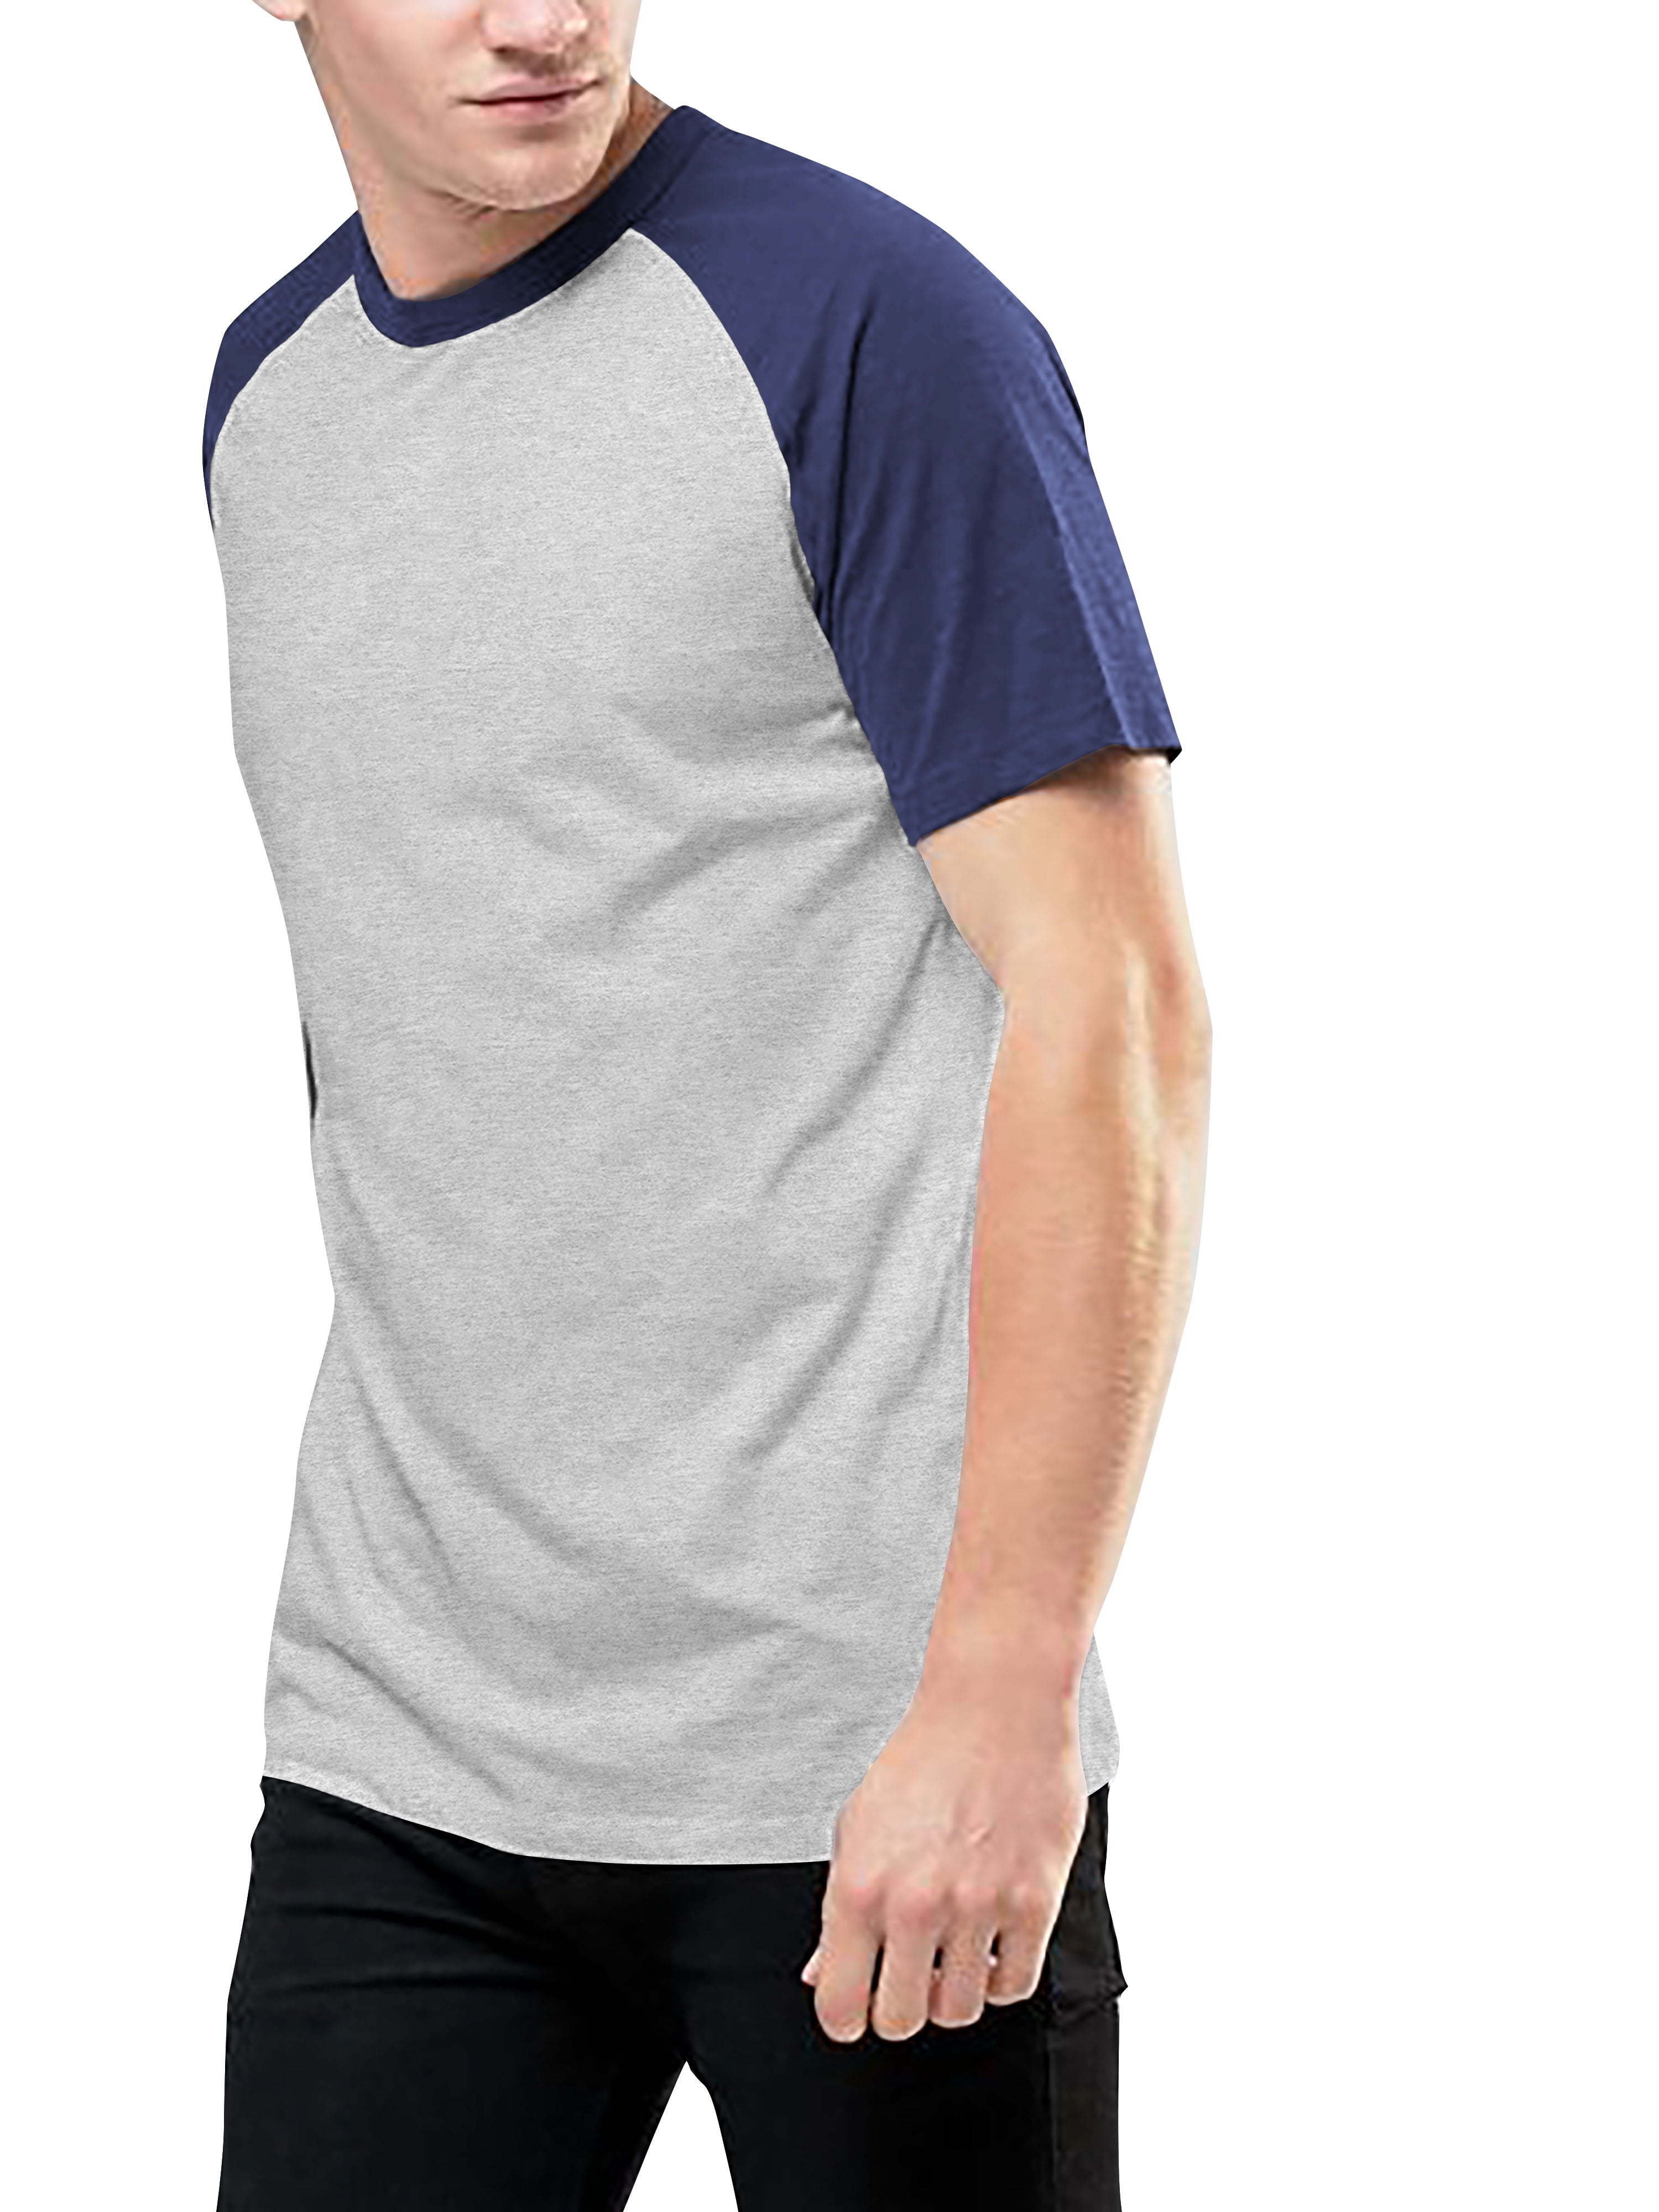 Slayer Summer Mans Casual Baseball Short Sleeves T Shirts Raglan Sleeve T Shirts 